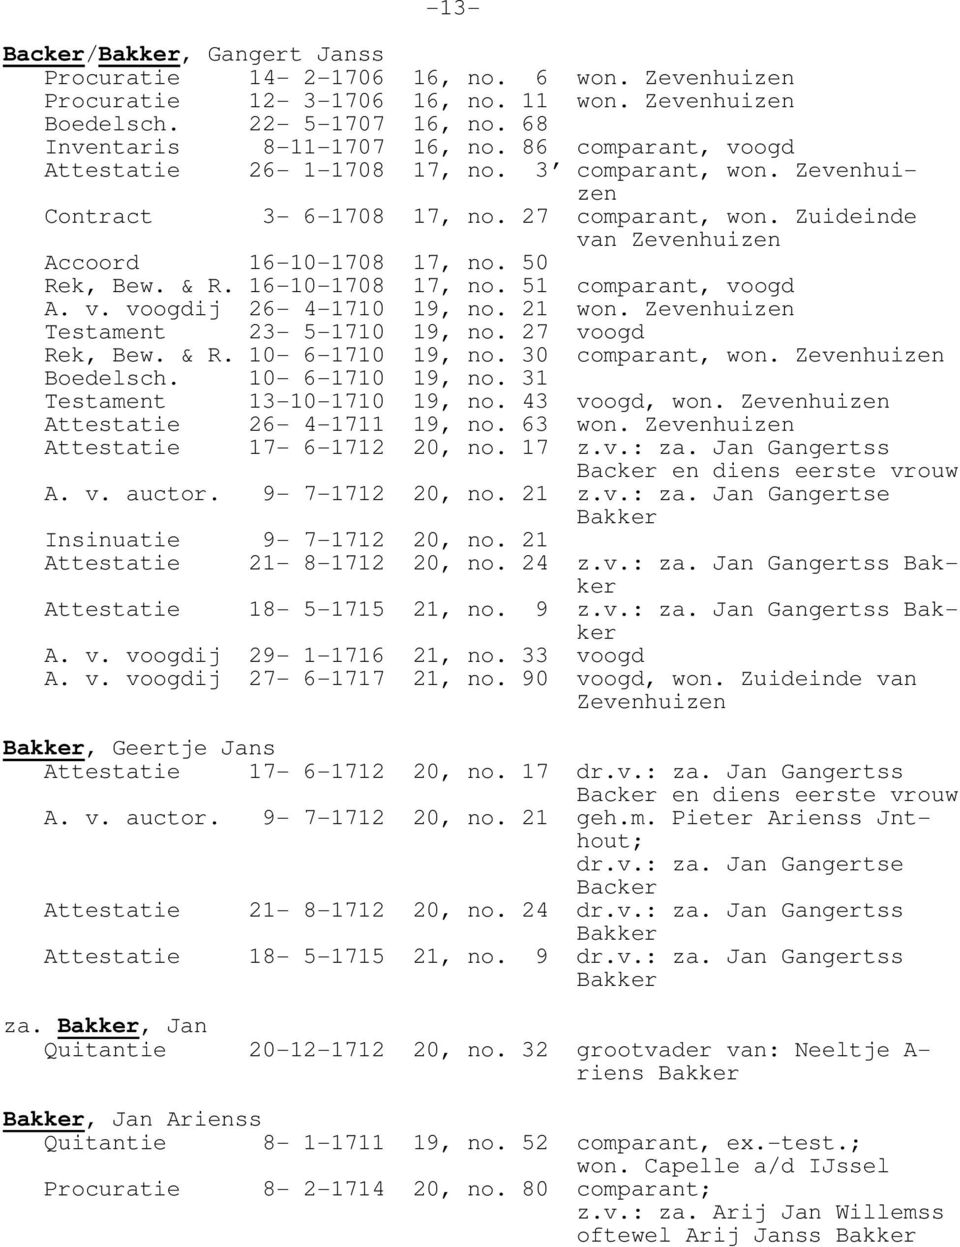 16-10-1708 17, no. 51 comparant, voogd A. v. voogdij 26-4-1710 19, no. 21 won. Zevenhuizen 23-5-1710 19, no. 27 voogd Rek, Bew. & R. 10-6-1710 19, no. 30 comparant, won. Zevenhuizen Boedelsch.